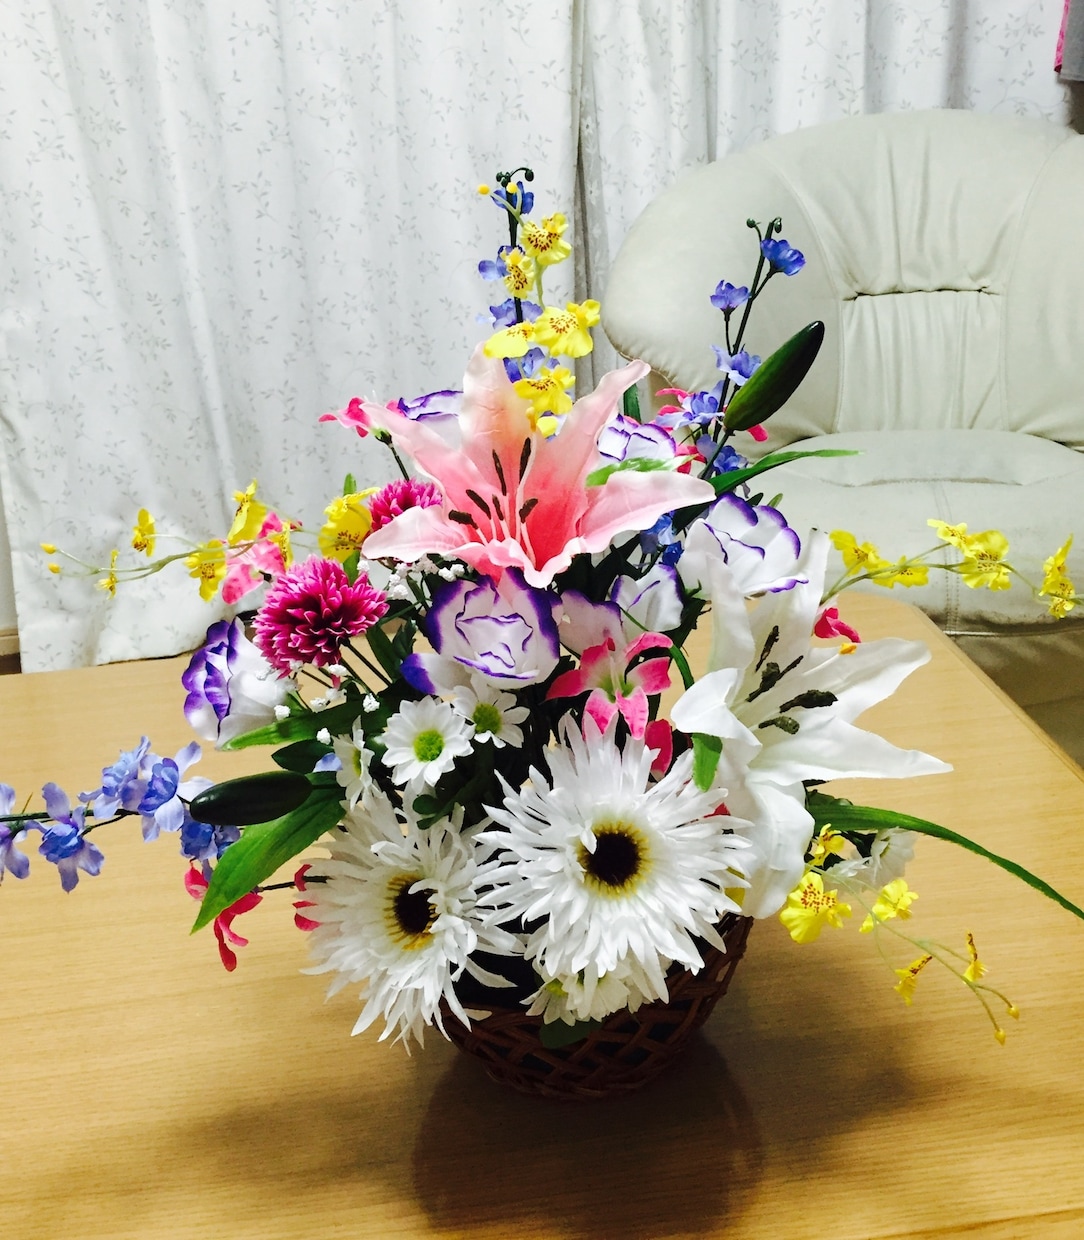 生花・造花のアレンジメント作ります プレゼント・御祝・お見舞・仏事用アレンジメントを作れます イメージ1